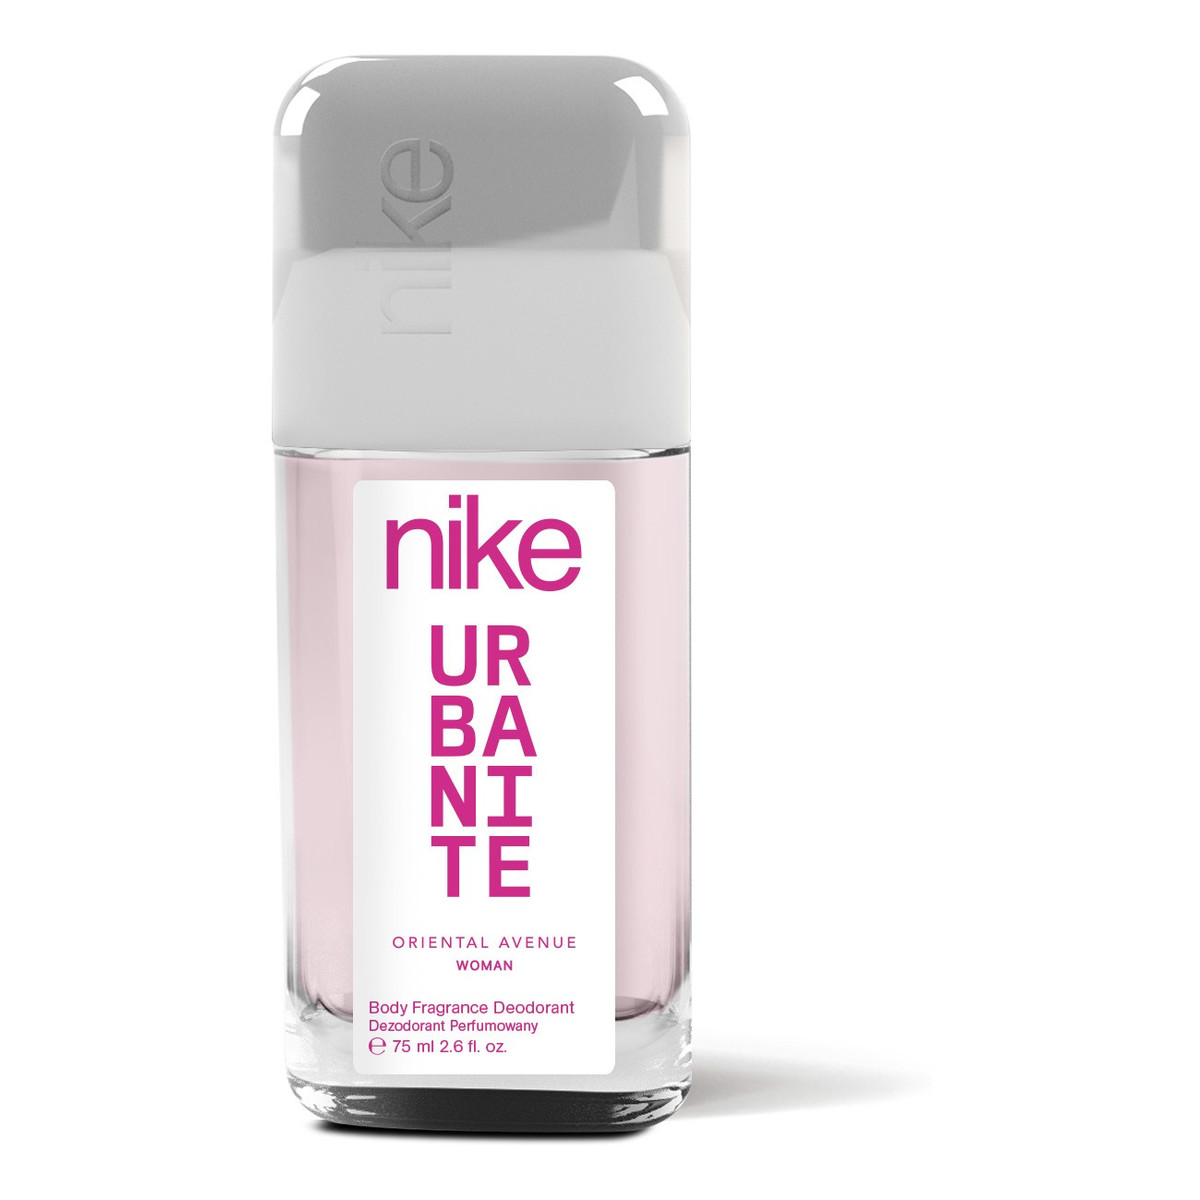 Nike Urbanite Woman Oriental Avenue Dezodorant perfumowany w szkle 75ml